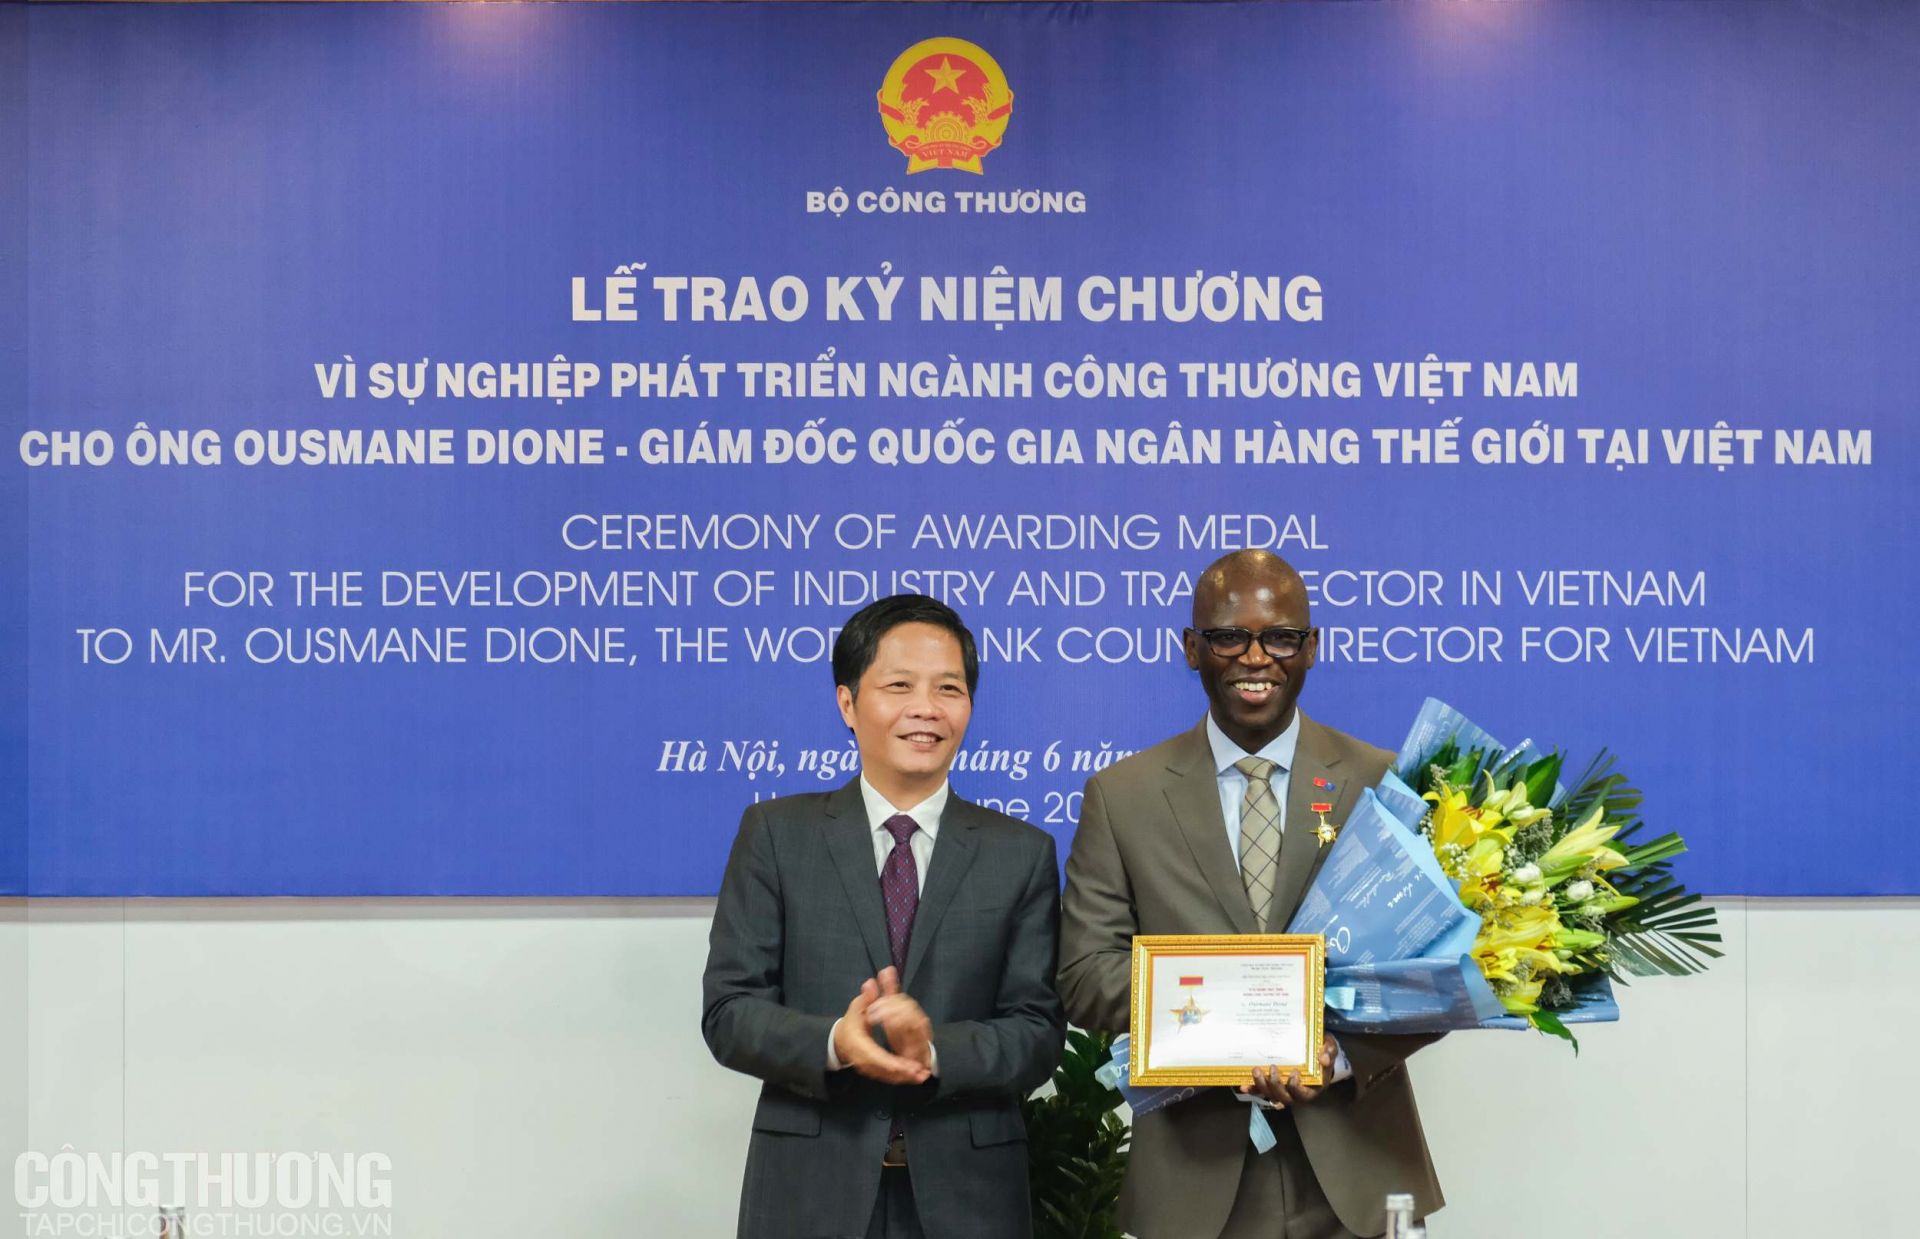 Bộ trưởng Trần Tuấn Anh trao Kỷ niệm chương vì sự phát triển ngành Công Thương cho Giám đốc quốc gia Ngân hàng Thế giới tại Việt Nam Ousmane Dione